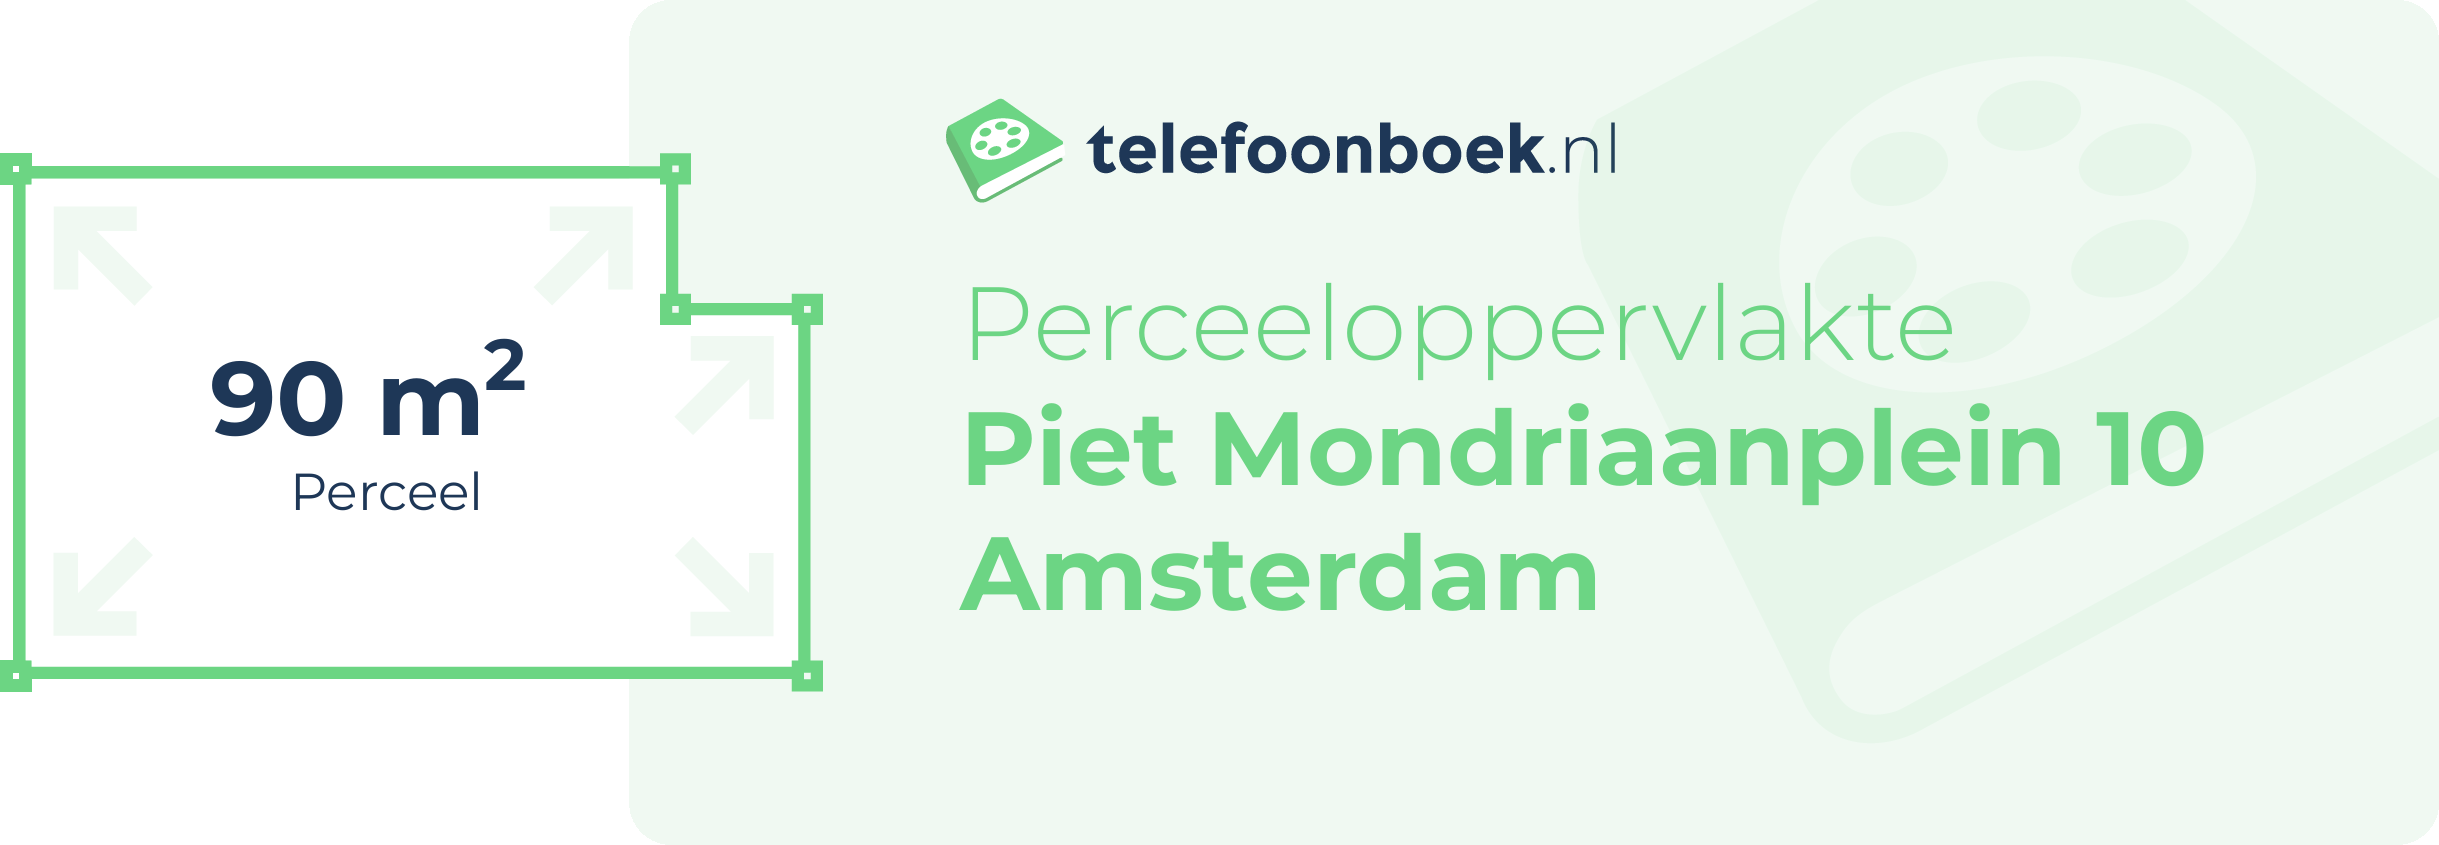 Perceeloppervlakte Piet Mondriaanplein 10 Amsterdam